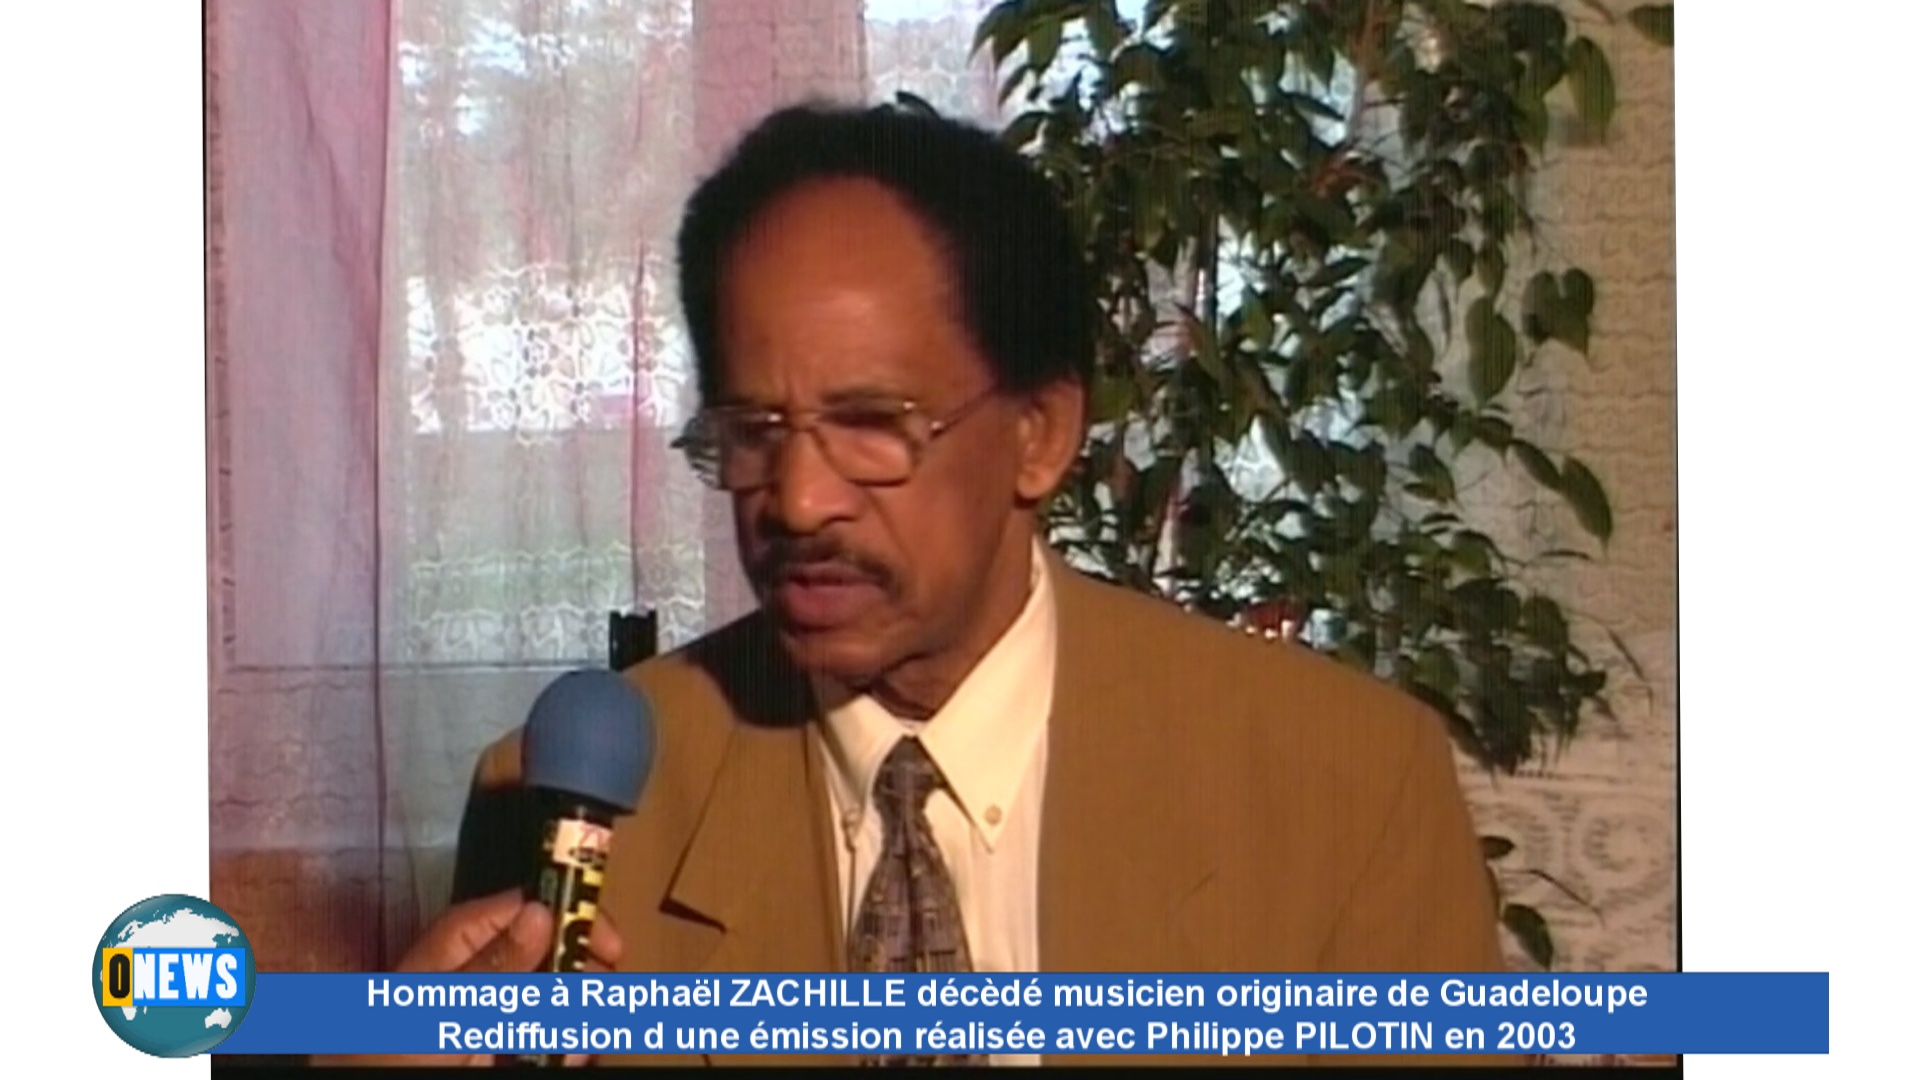 [Vidéo]Hommage à Raphaël ZACHILLE décédé musicien originaire de Guadeloupe. Rediffusion d un sujet tourné en 2003.